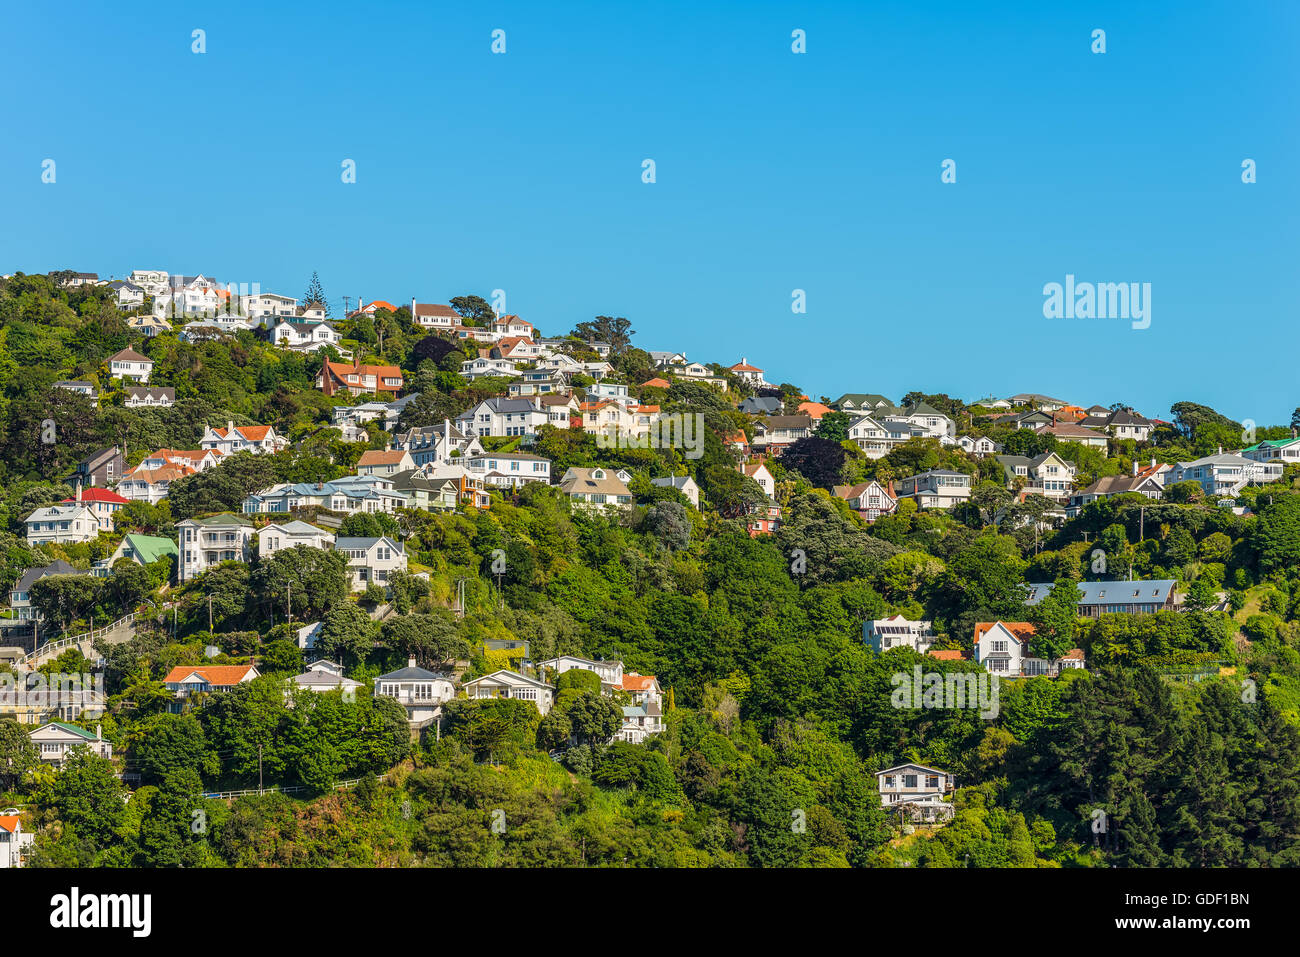 Bunte Häuser in Wellington, Neuseeland. Wellington ist die Hauptstadt und zweitgrößte Stadtregion von Neuseeland. Stockfoto